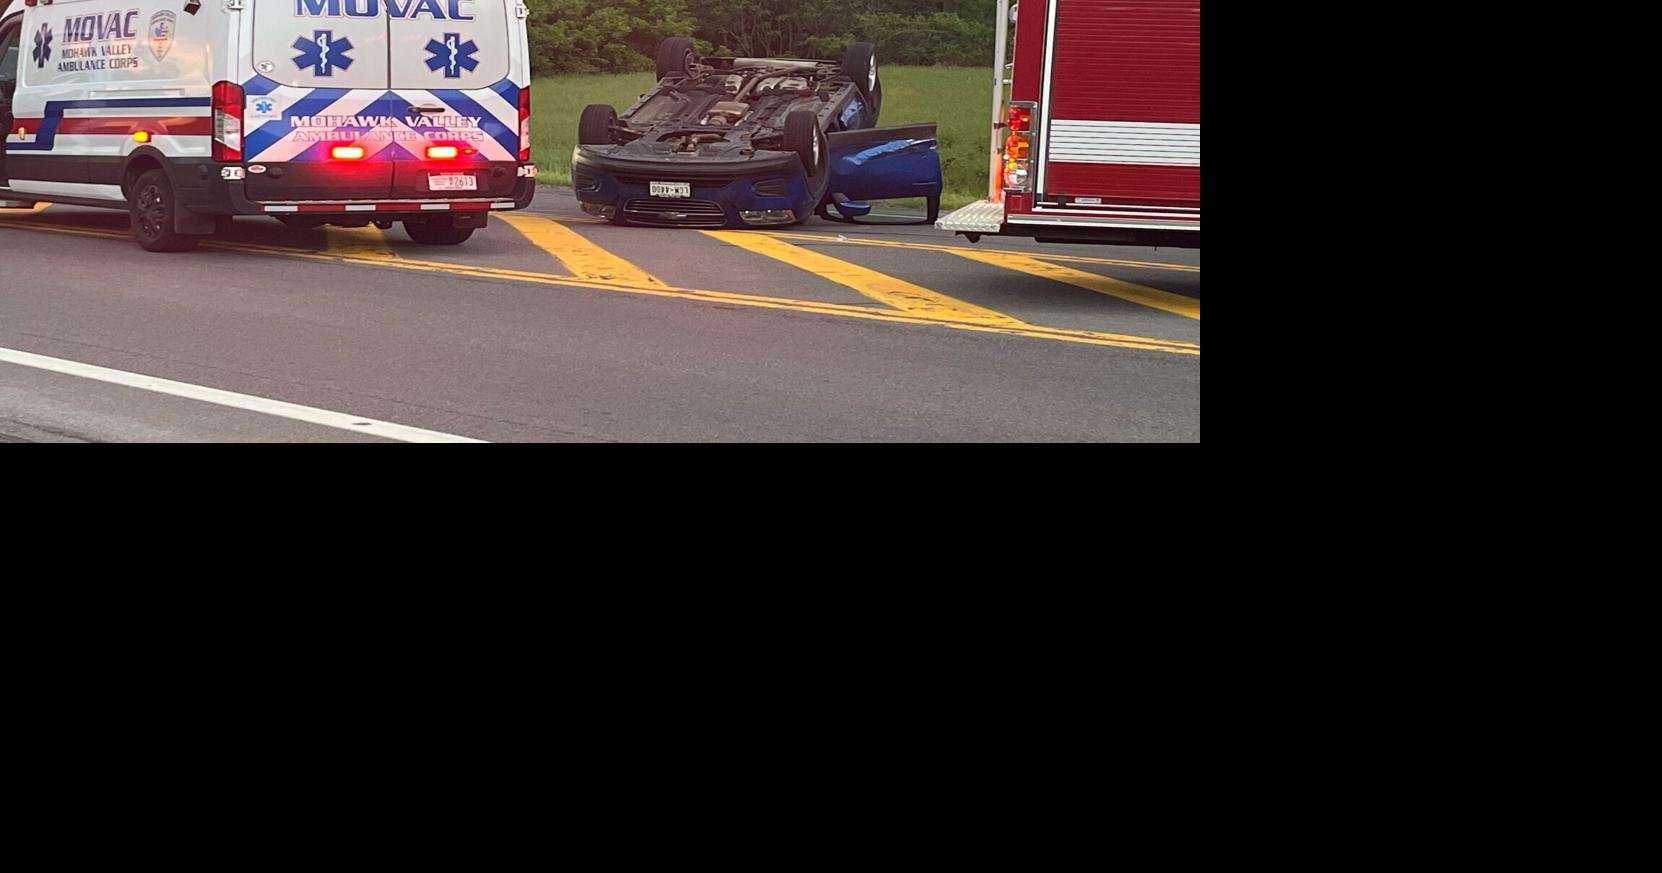 2-Car Crash Sends 4 to the Hospital | News | wktv.com – WKTV